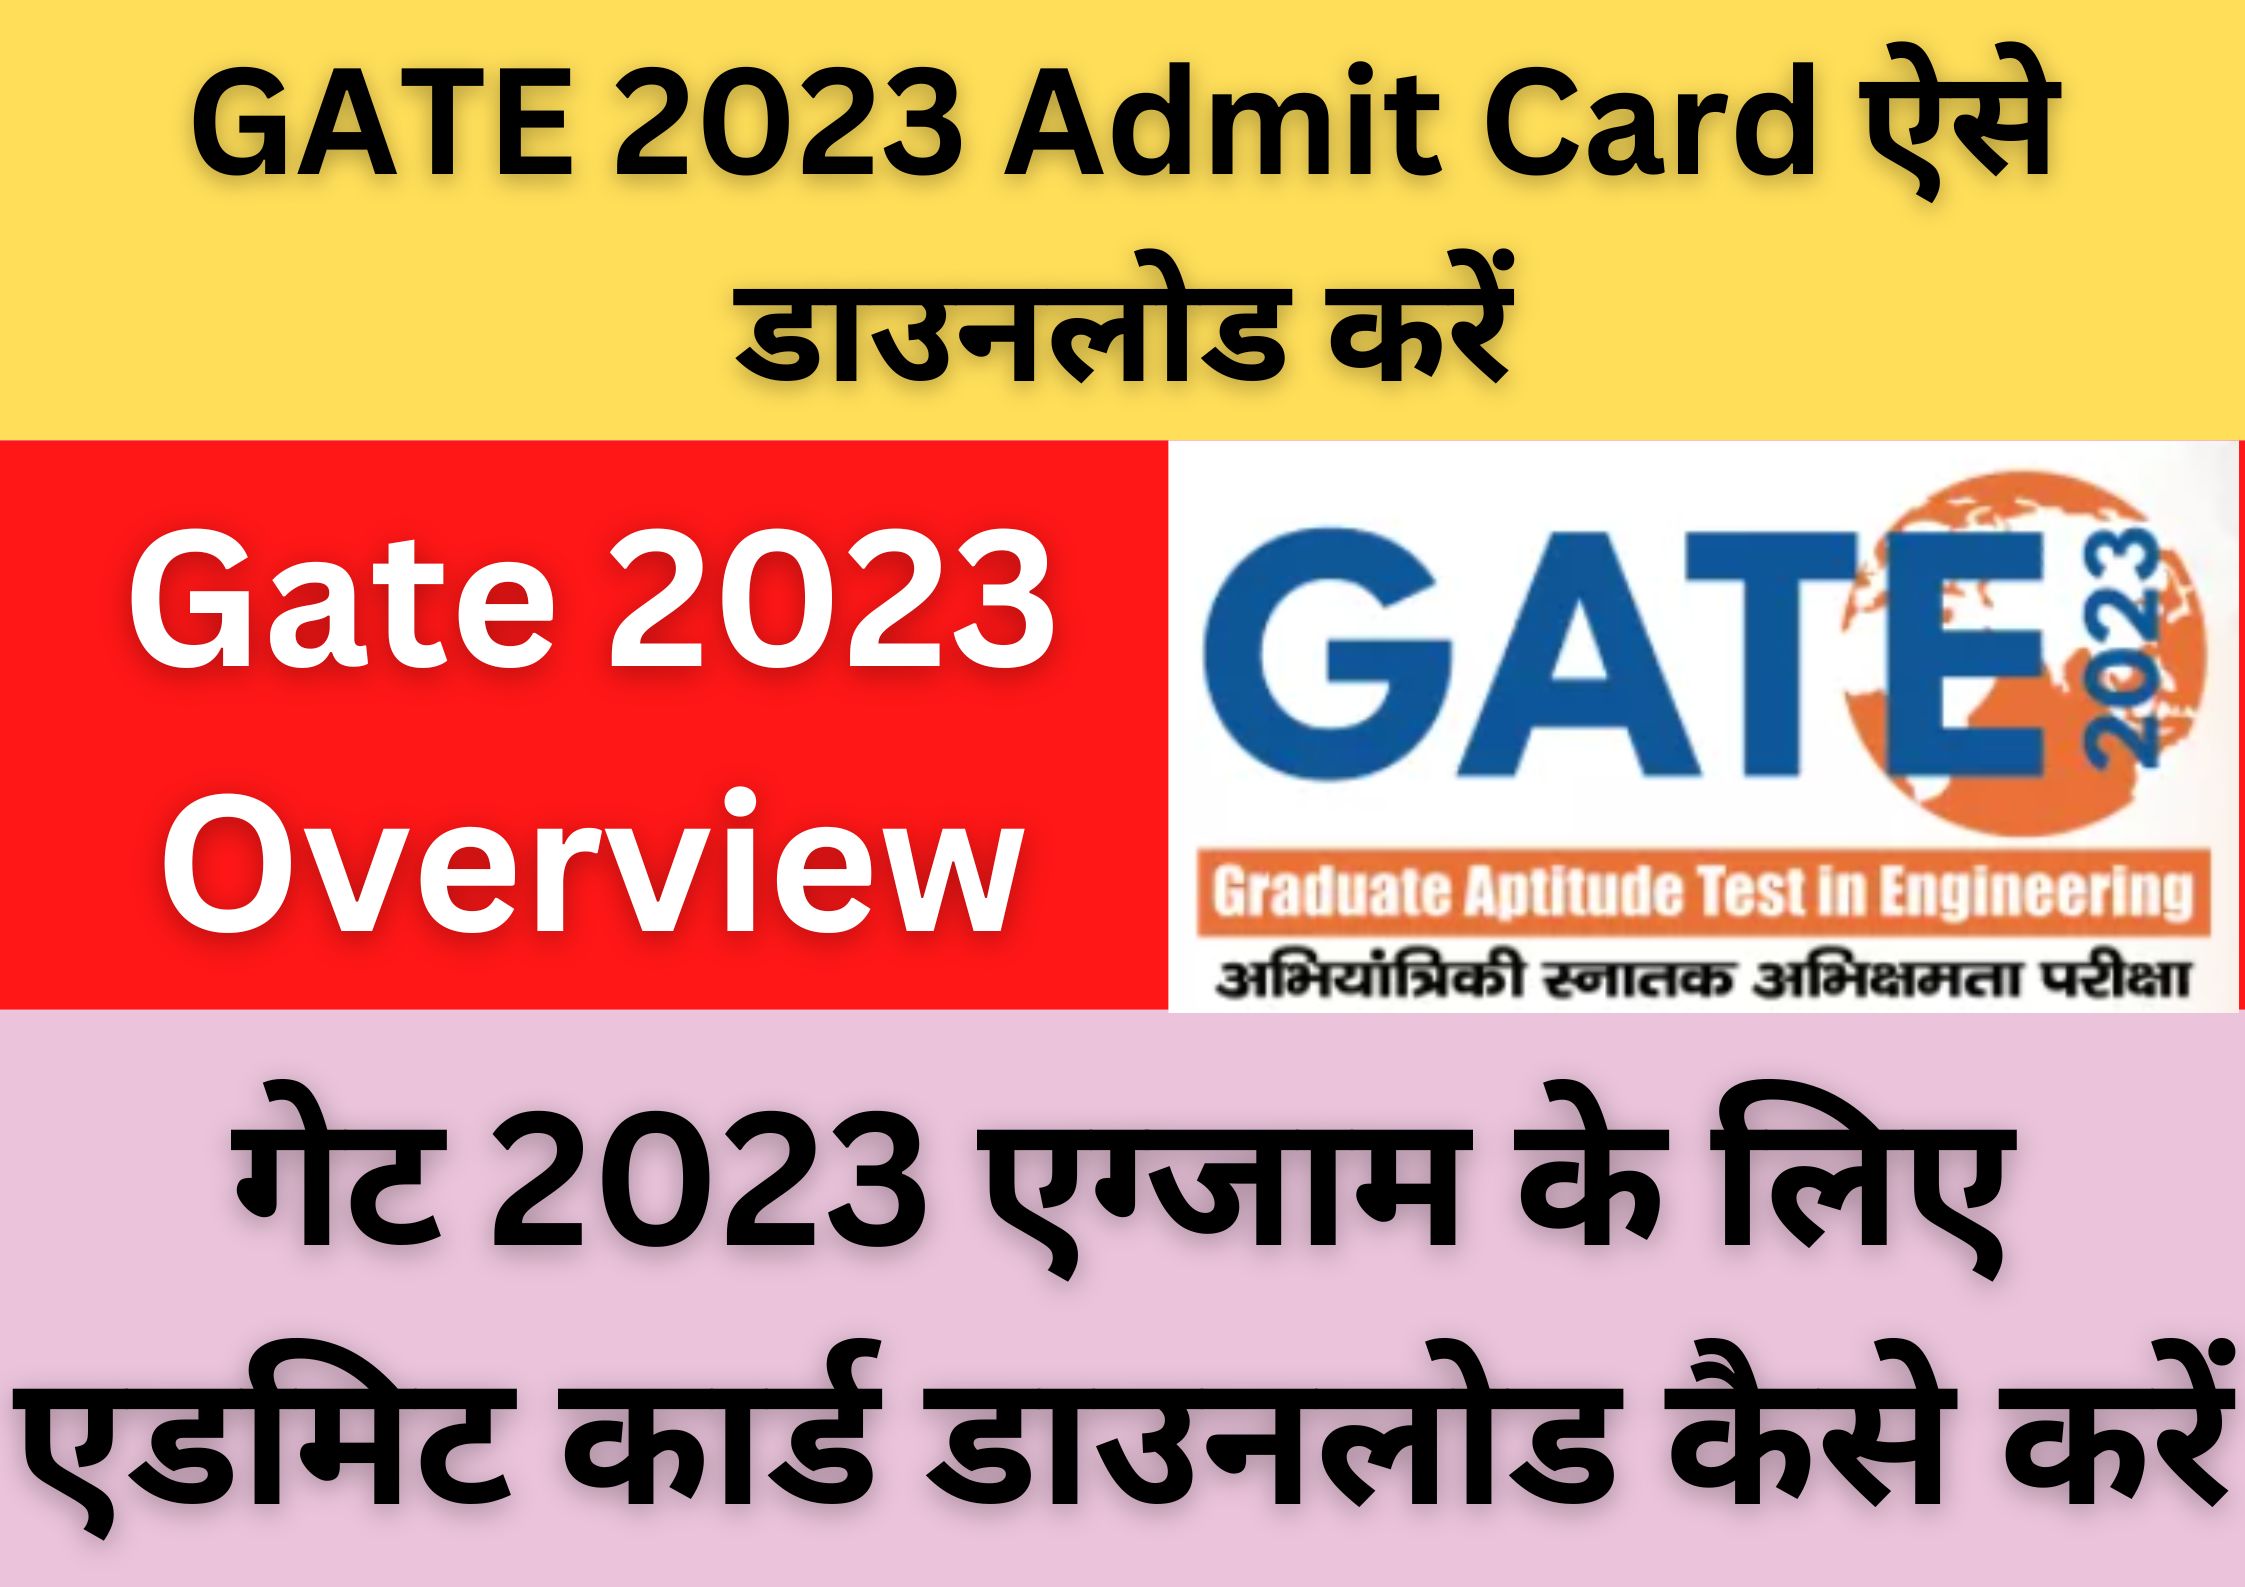 GATE 2023 Admit Card ऐसे डाउनलोड करें